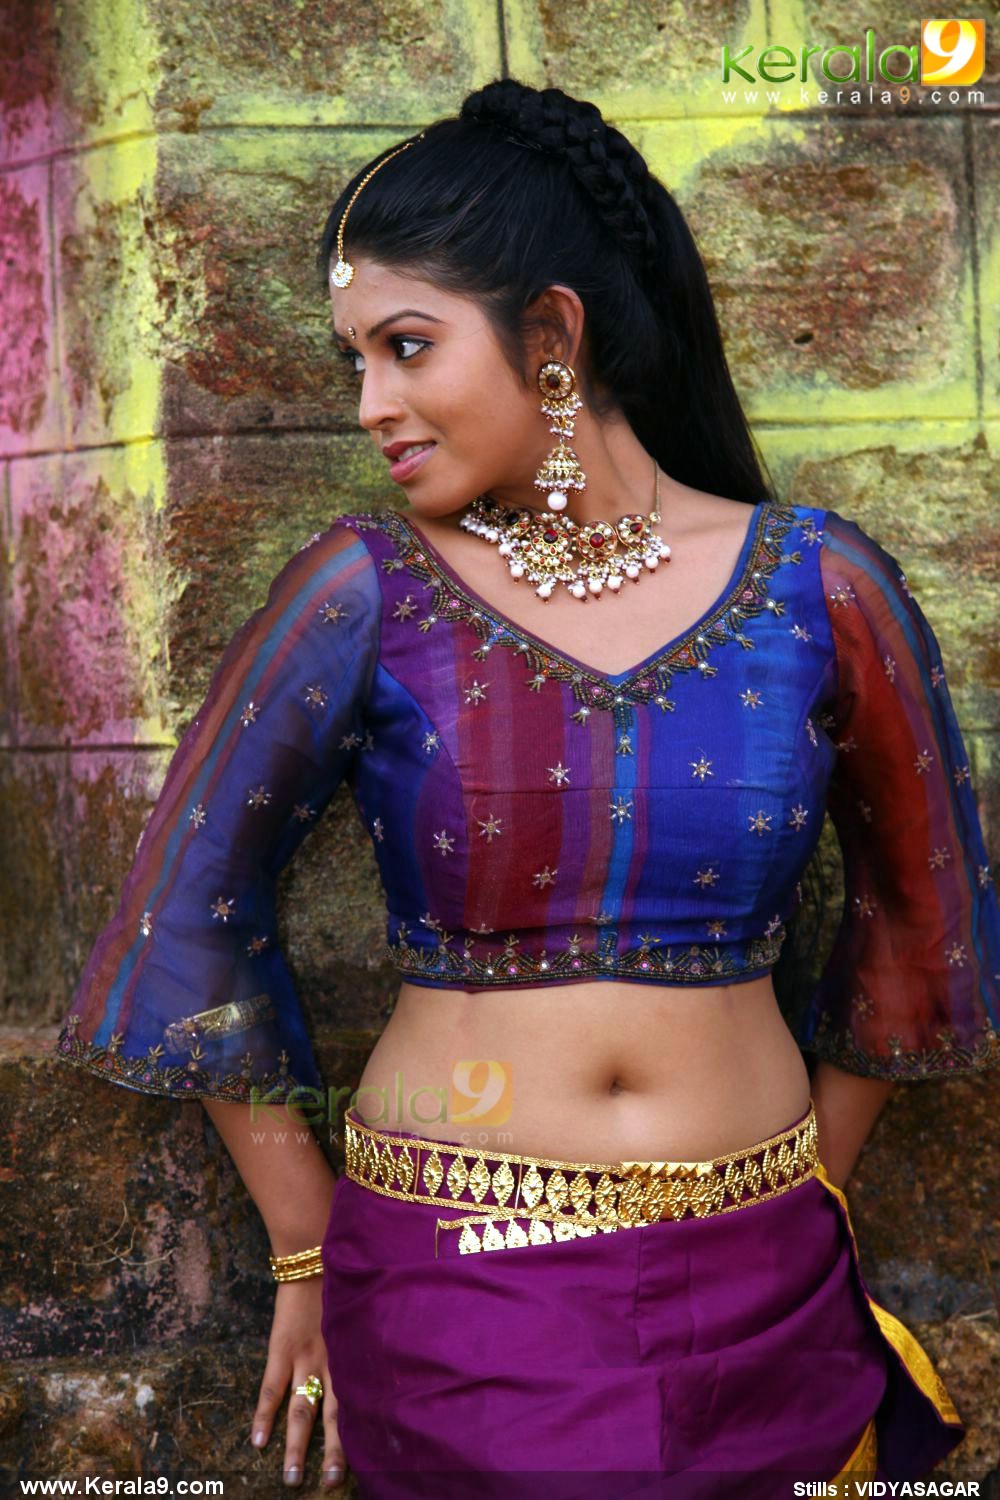 www.INSITEIN.blogspot.com: Rasaleela Malayalam Movie Watch Online ...